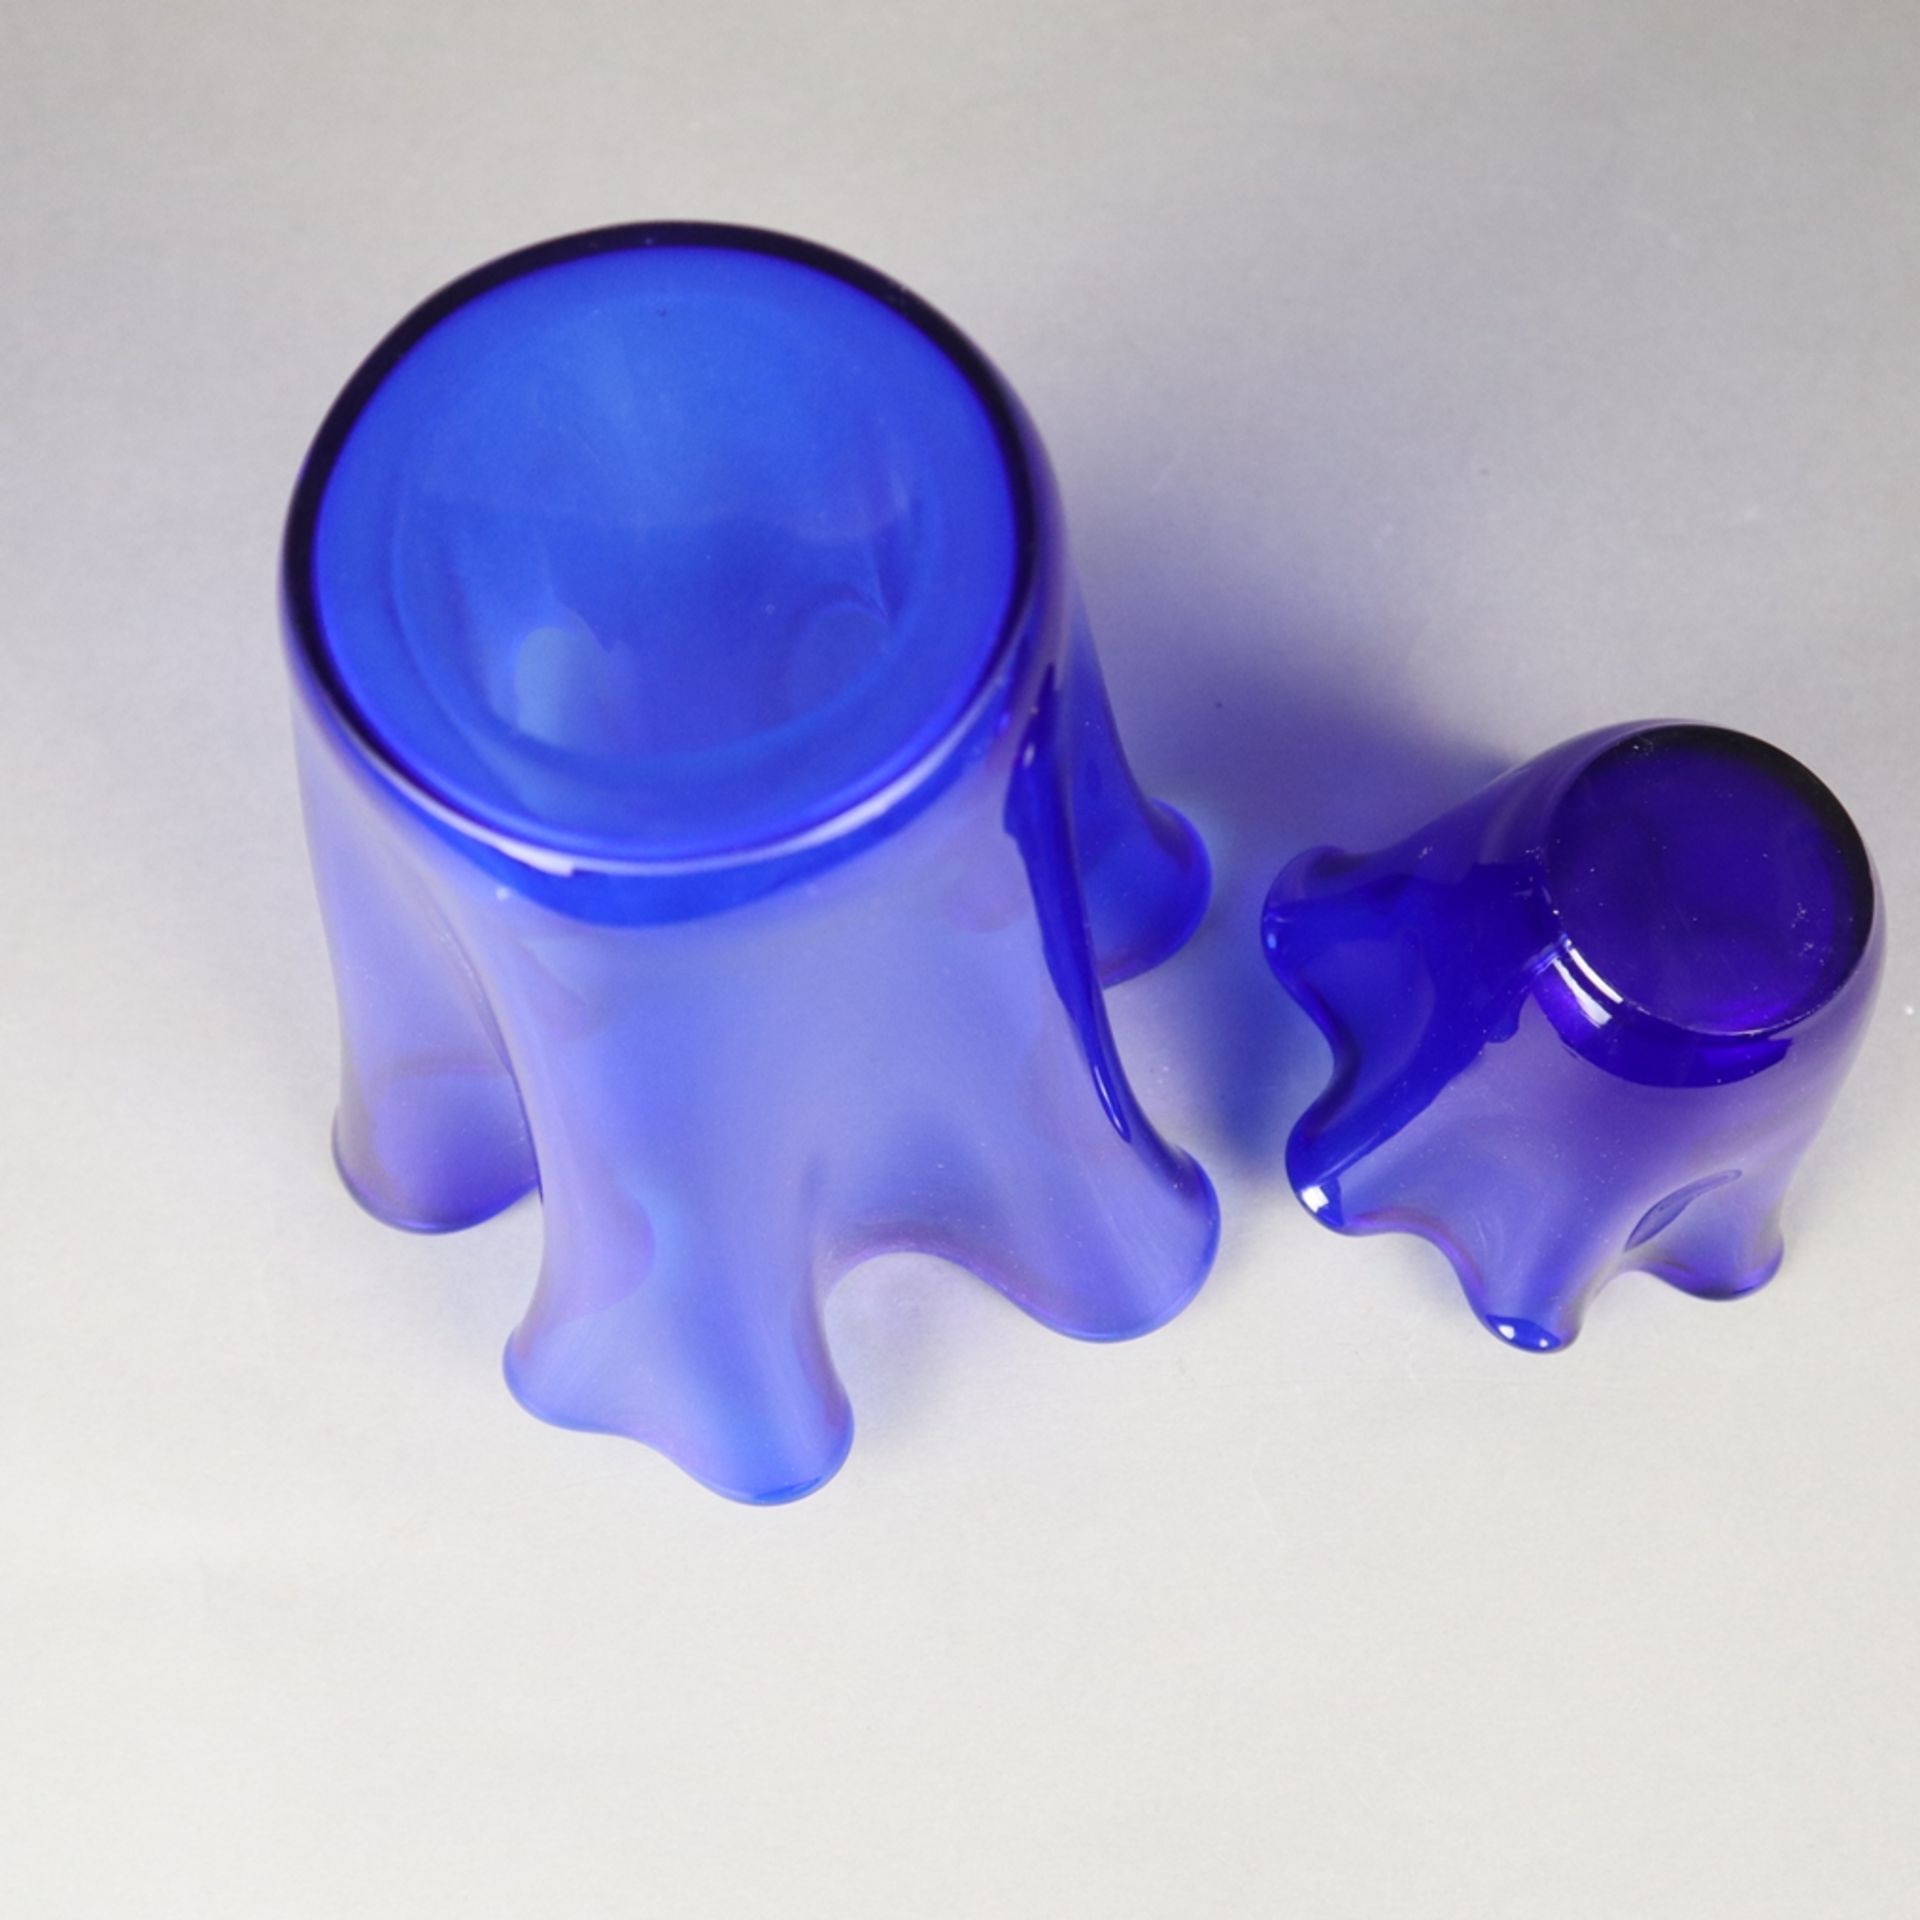 Zwei Ziervasen in "Fazzoletto"- Form - Taschentuchvasen, kobaltblaues Glas, meh - Bild 6 aus 6